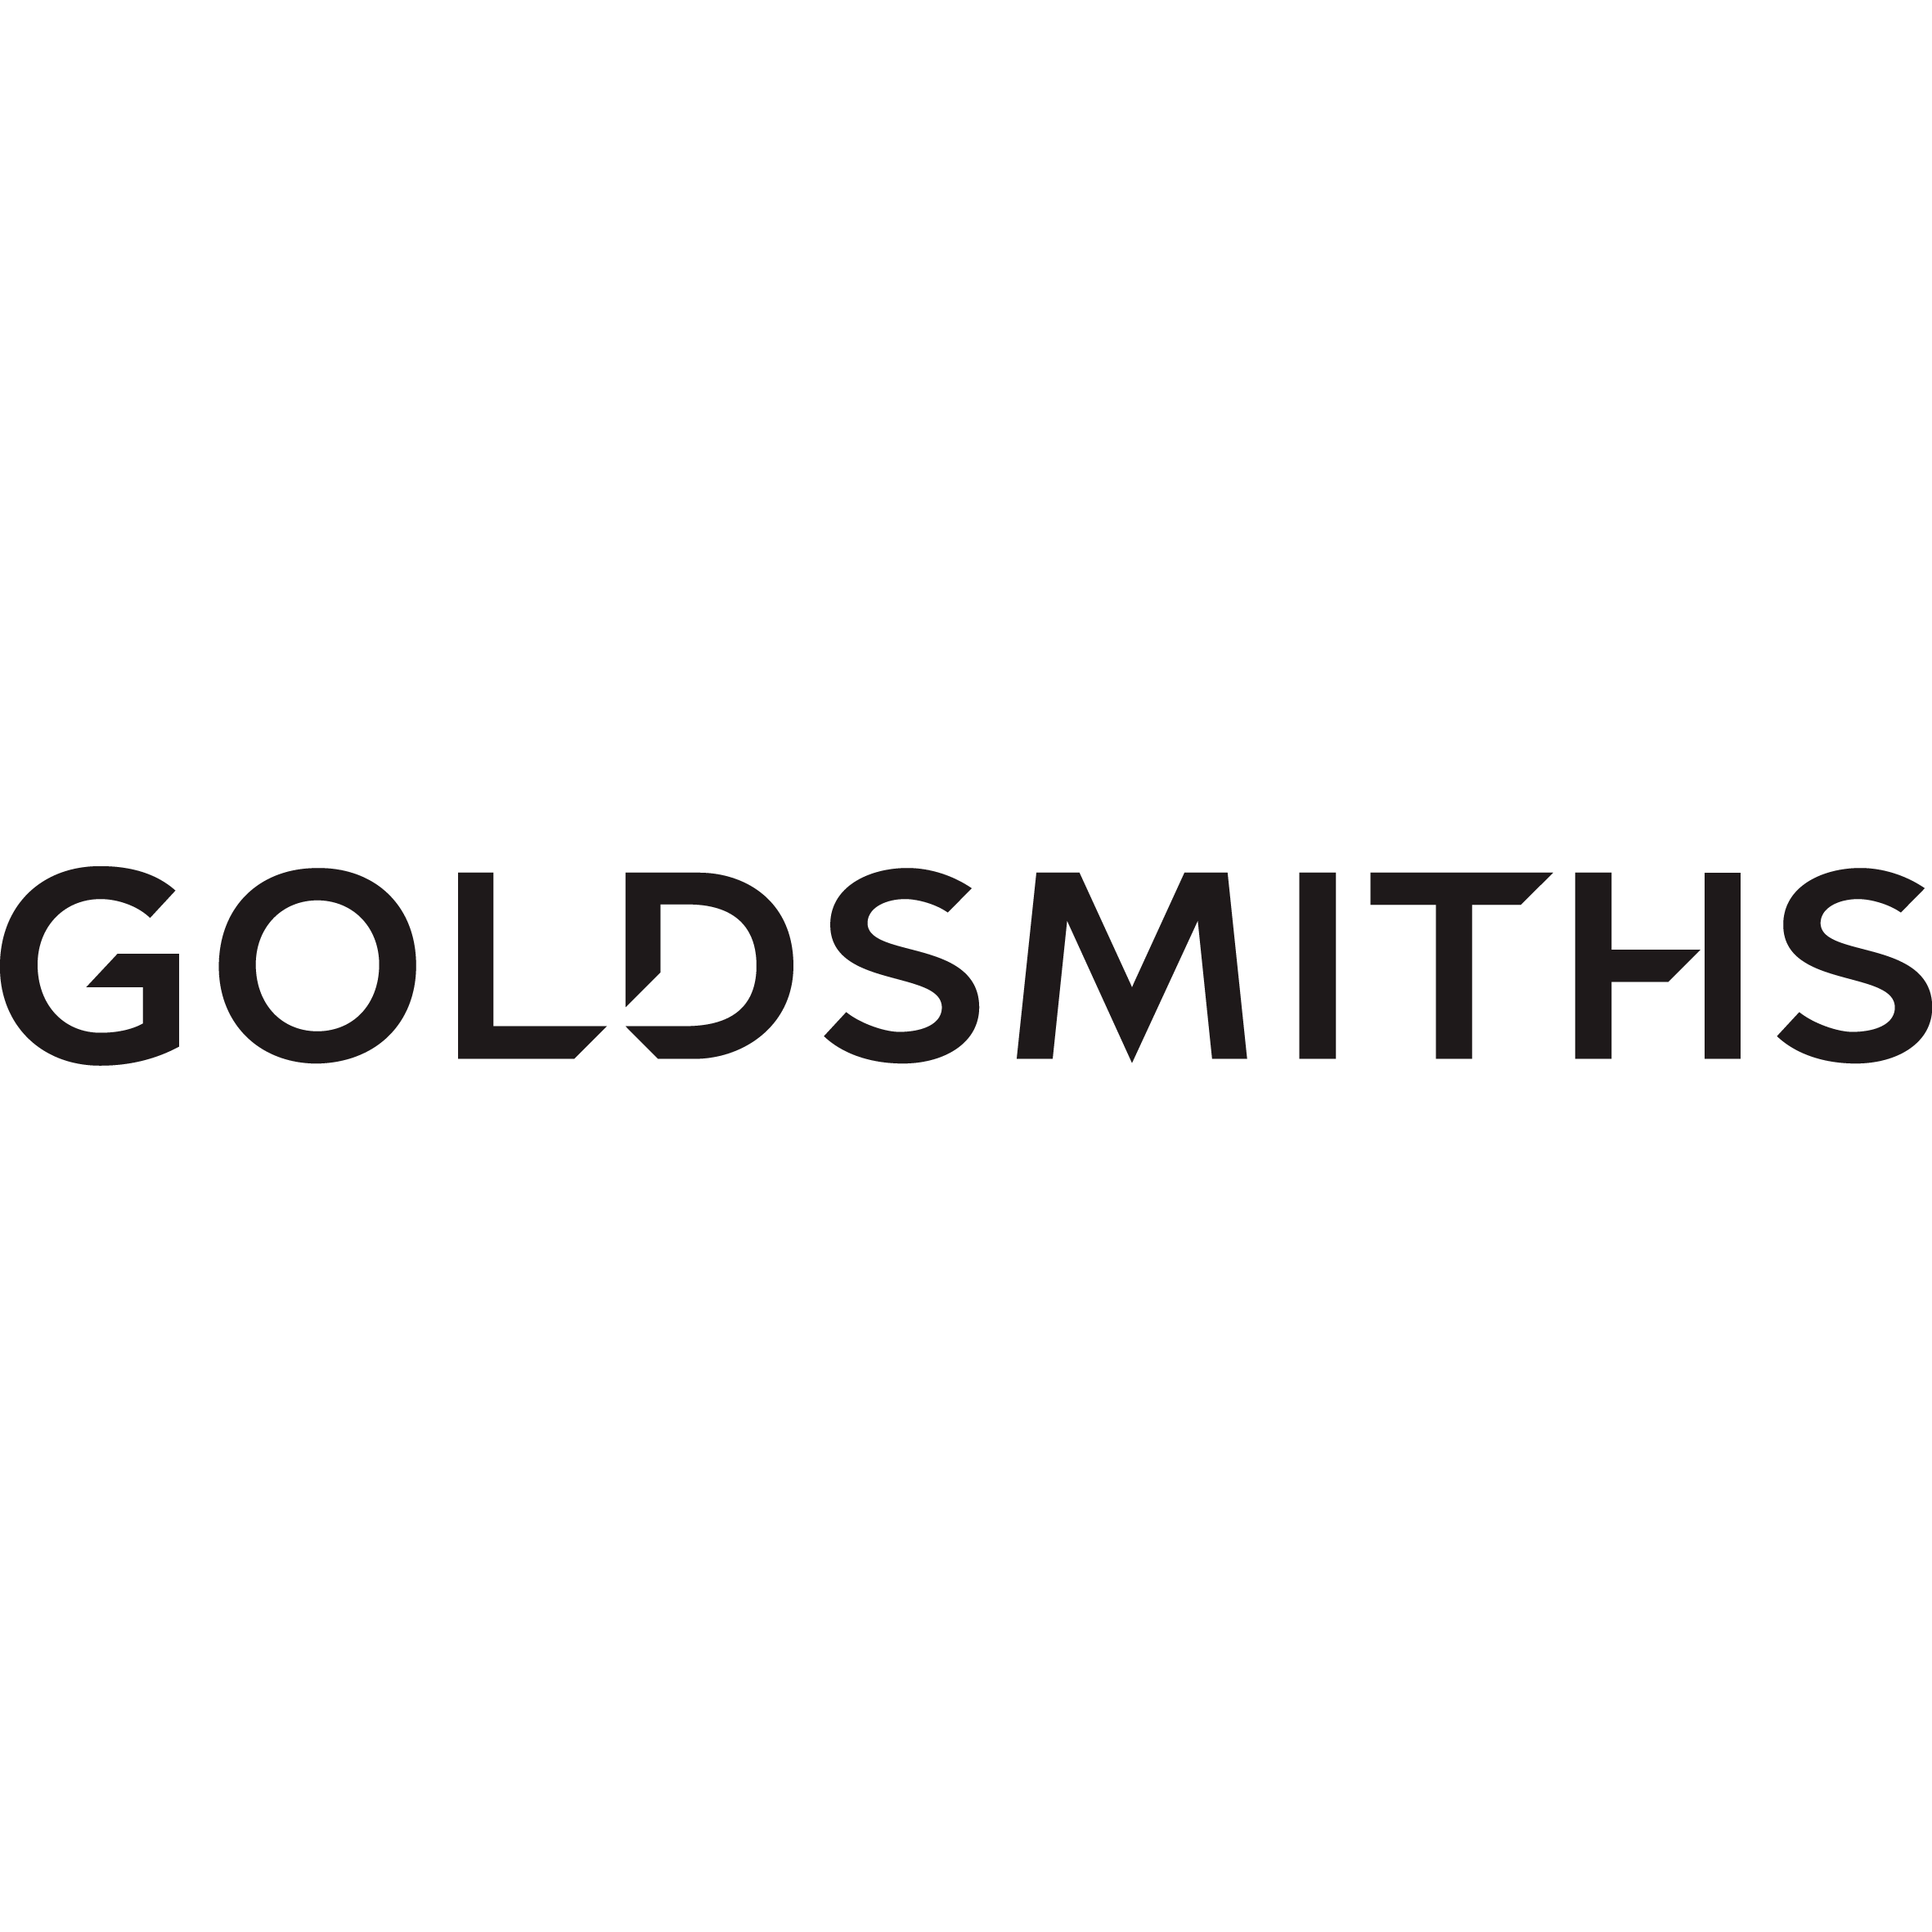 Goldsmiths - Exeter, Devon EX4 3LH - 01392 272776 | ShowMeLocal.com